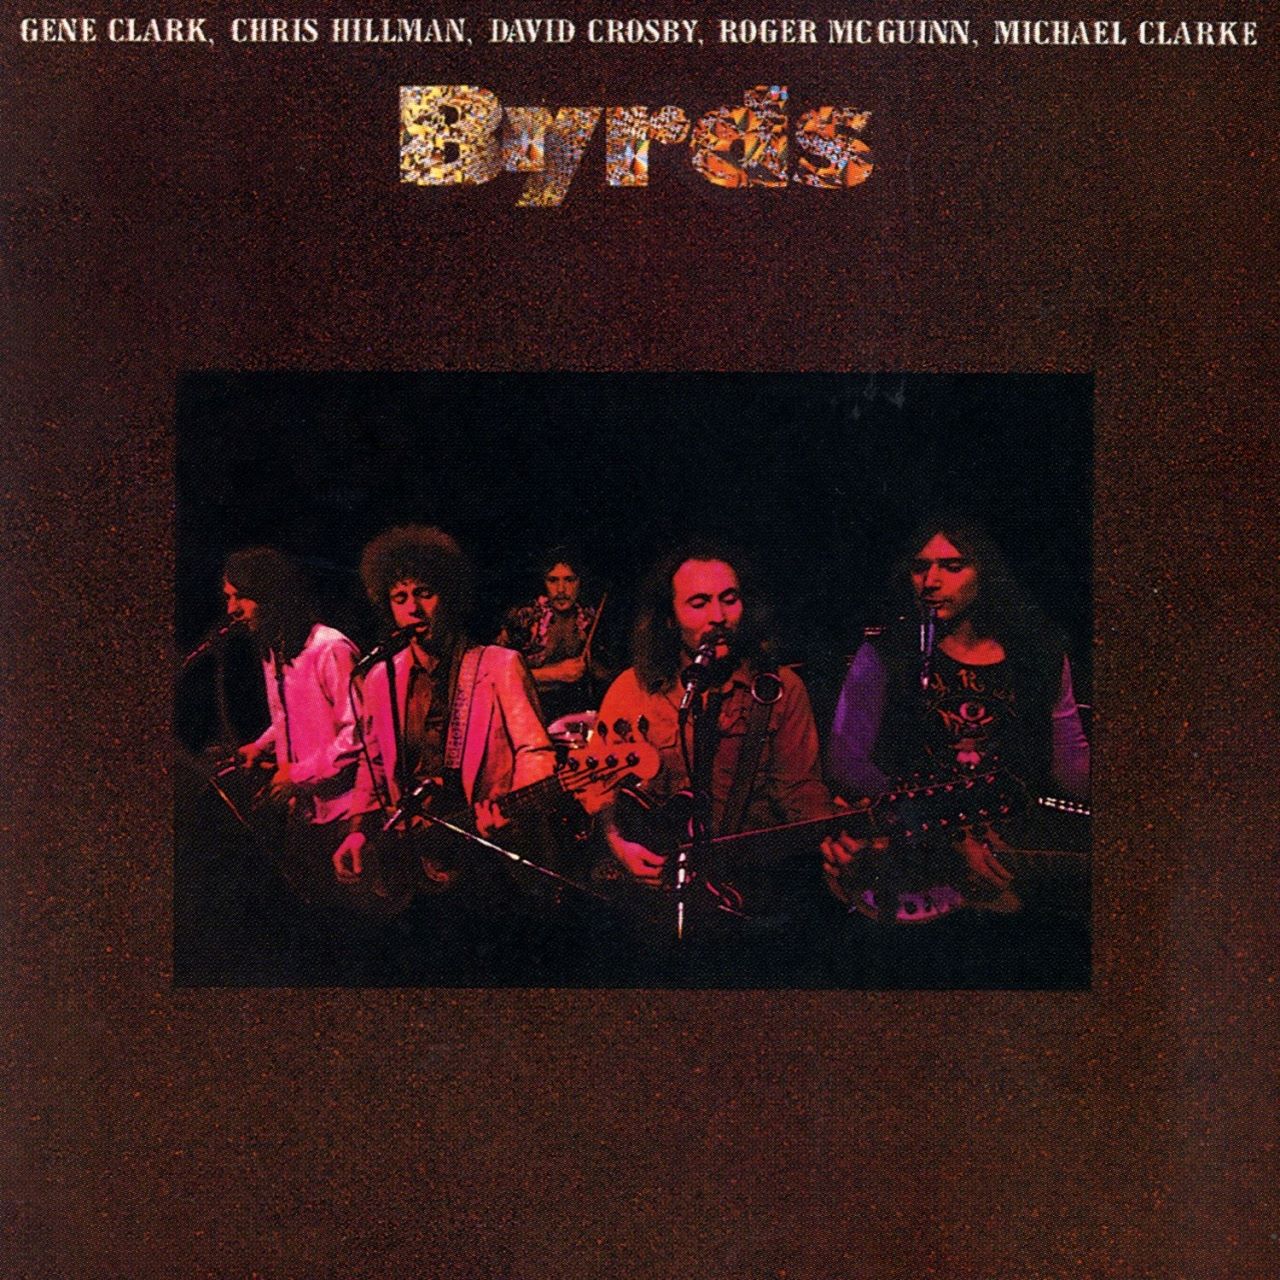 Byrds – Byrds cover album